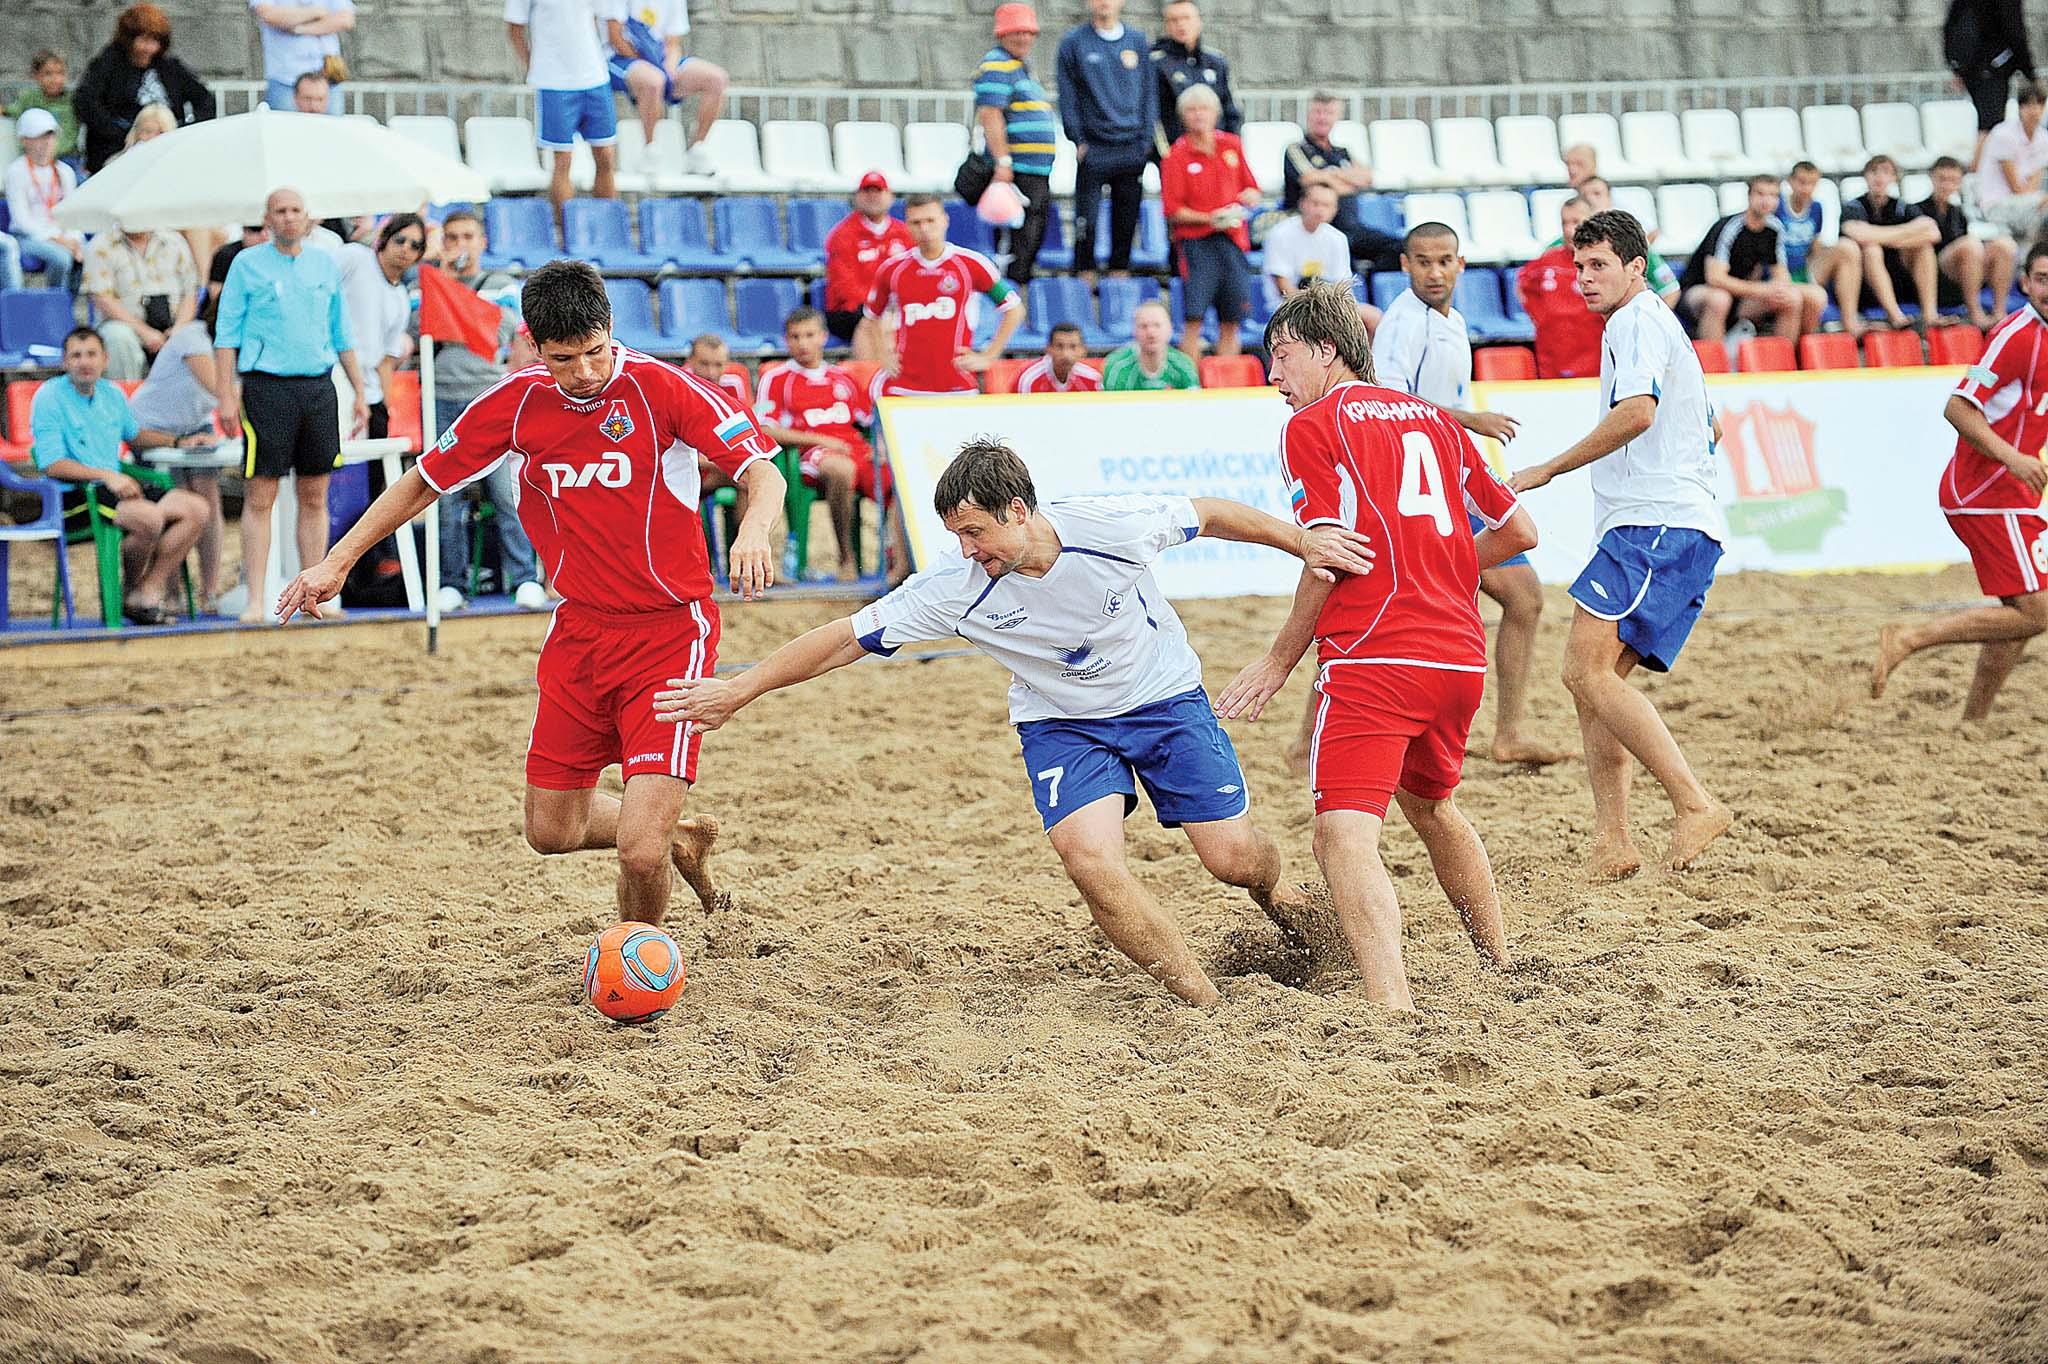 Фестиваль пляжных видов спорта среди команд Ассоциации городов Поволжья. 13 - 14 августа 2016 года, город Самара.